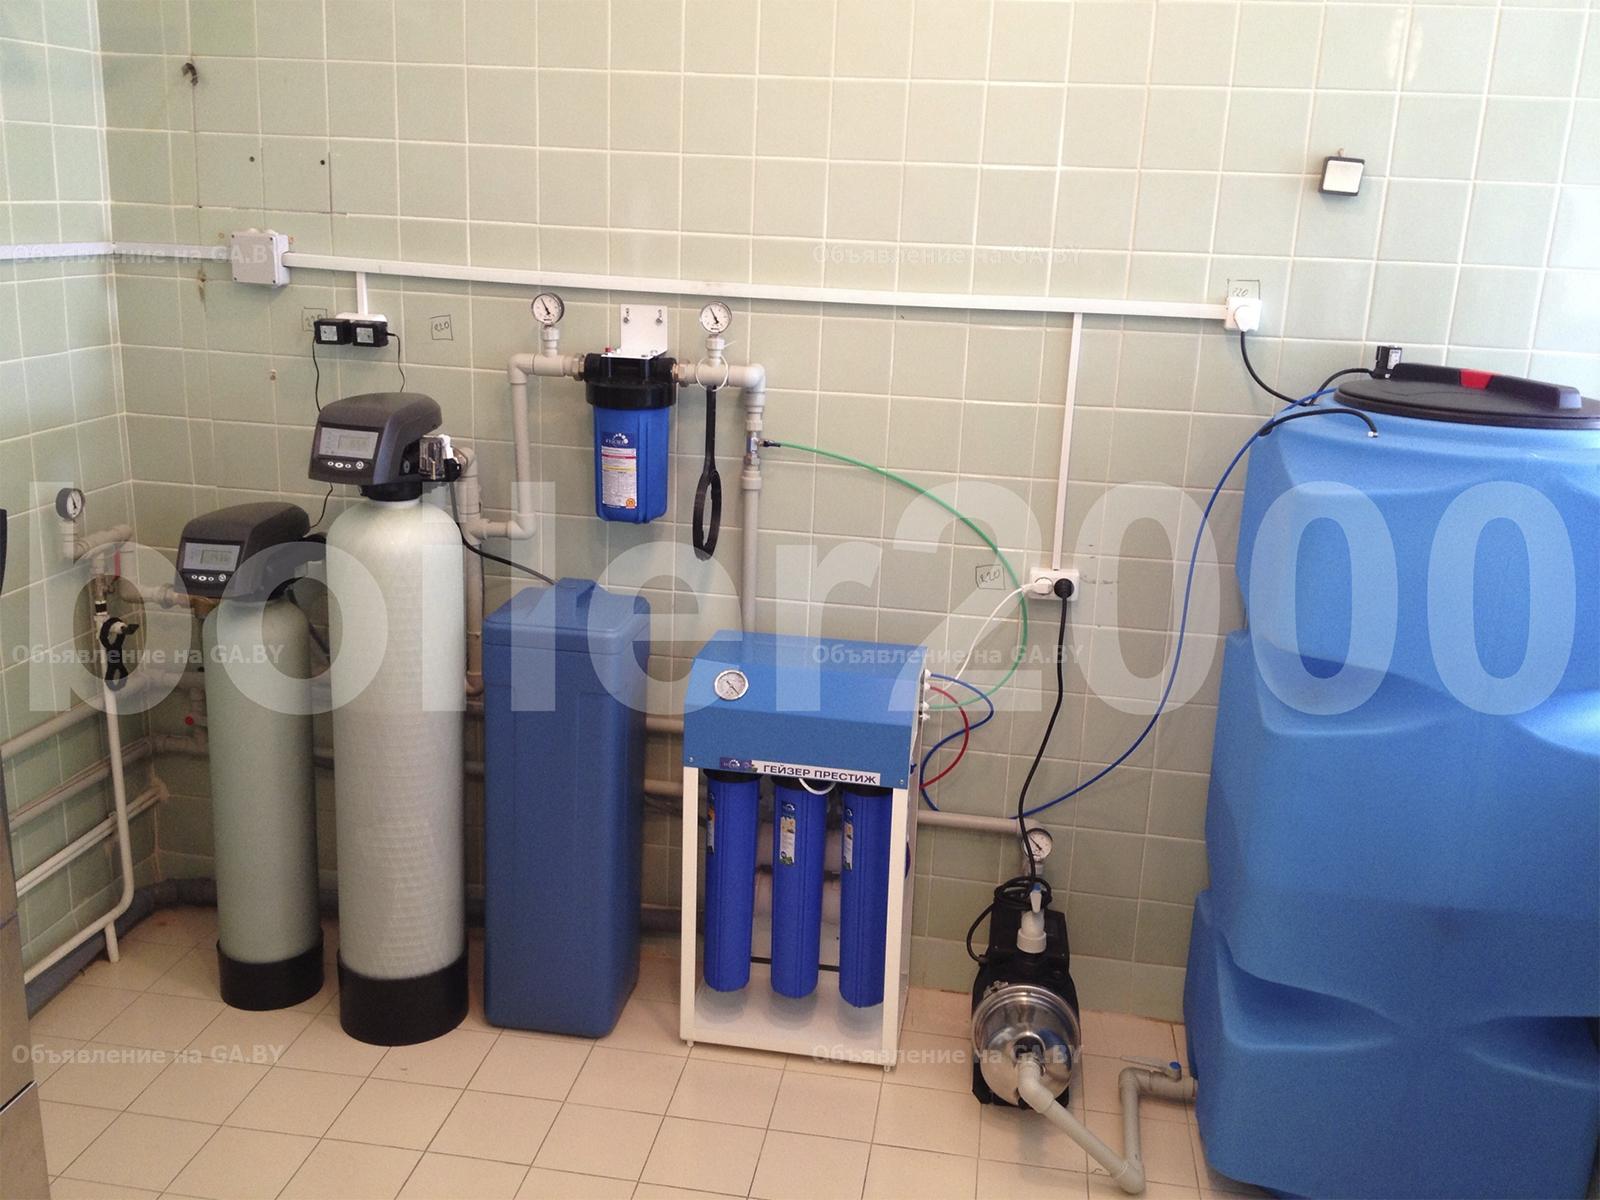 Выполню Водоподготовка и водоочистка, анализ воды - GA.BY